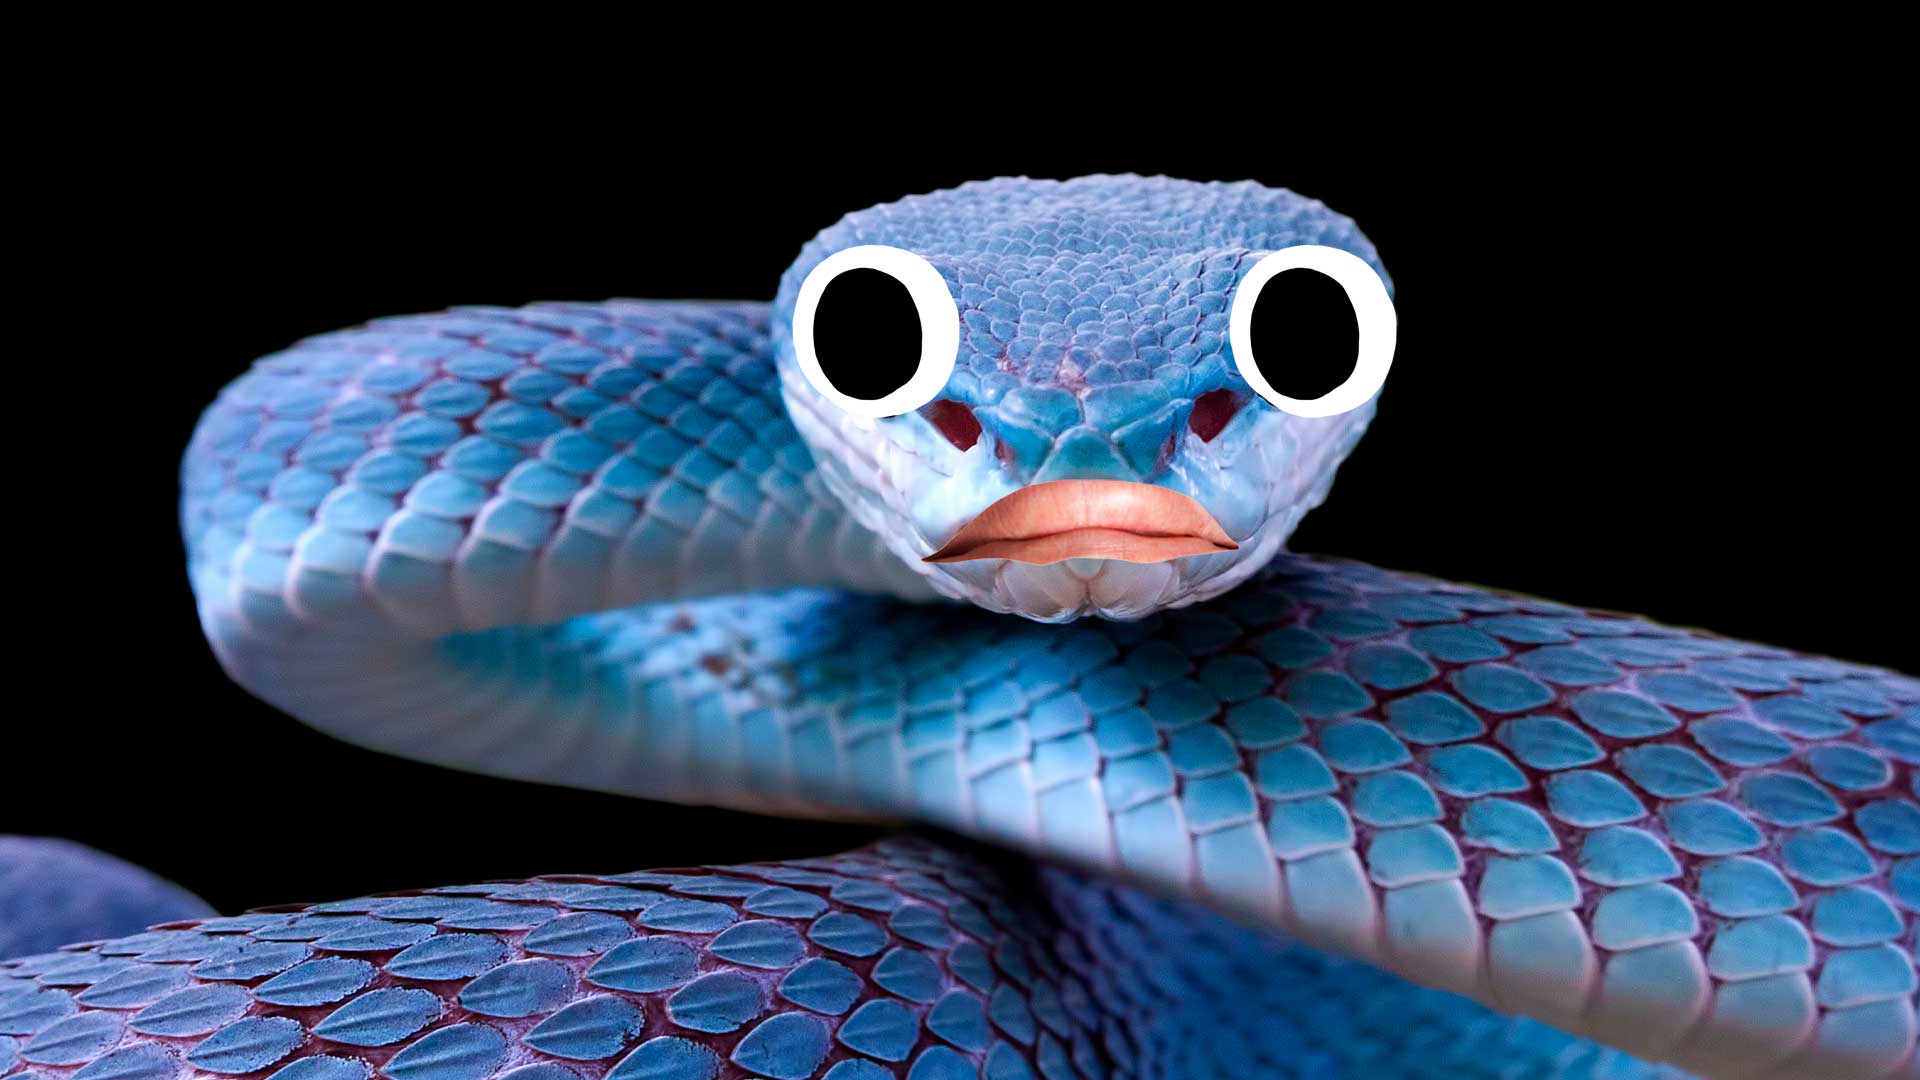 A blue snake